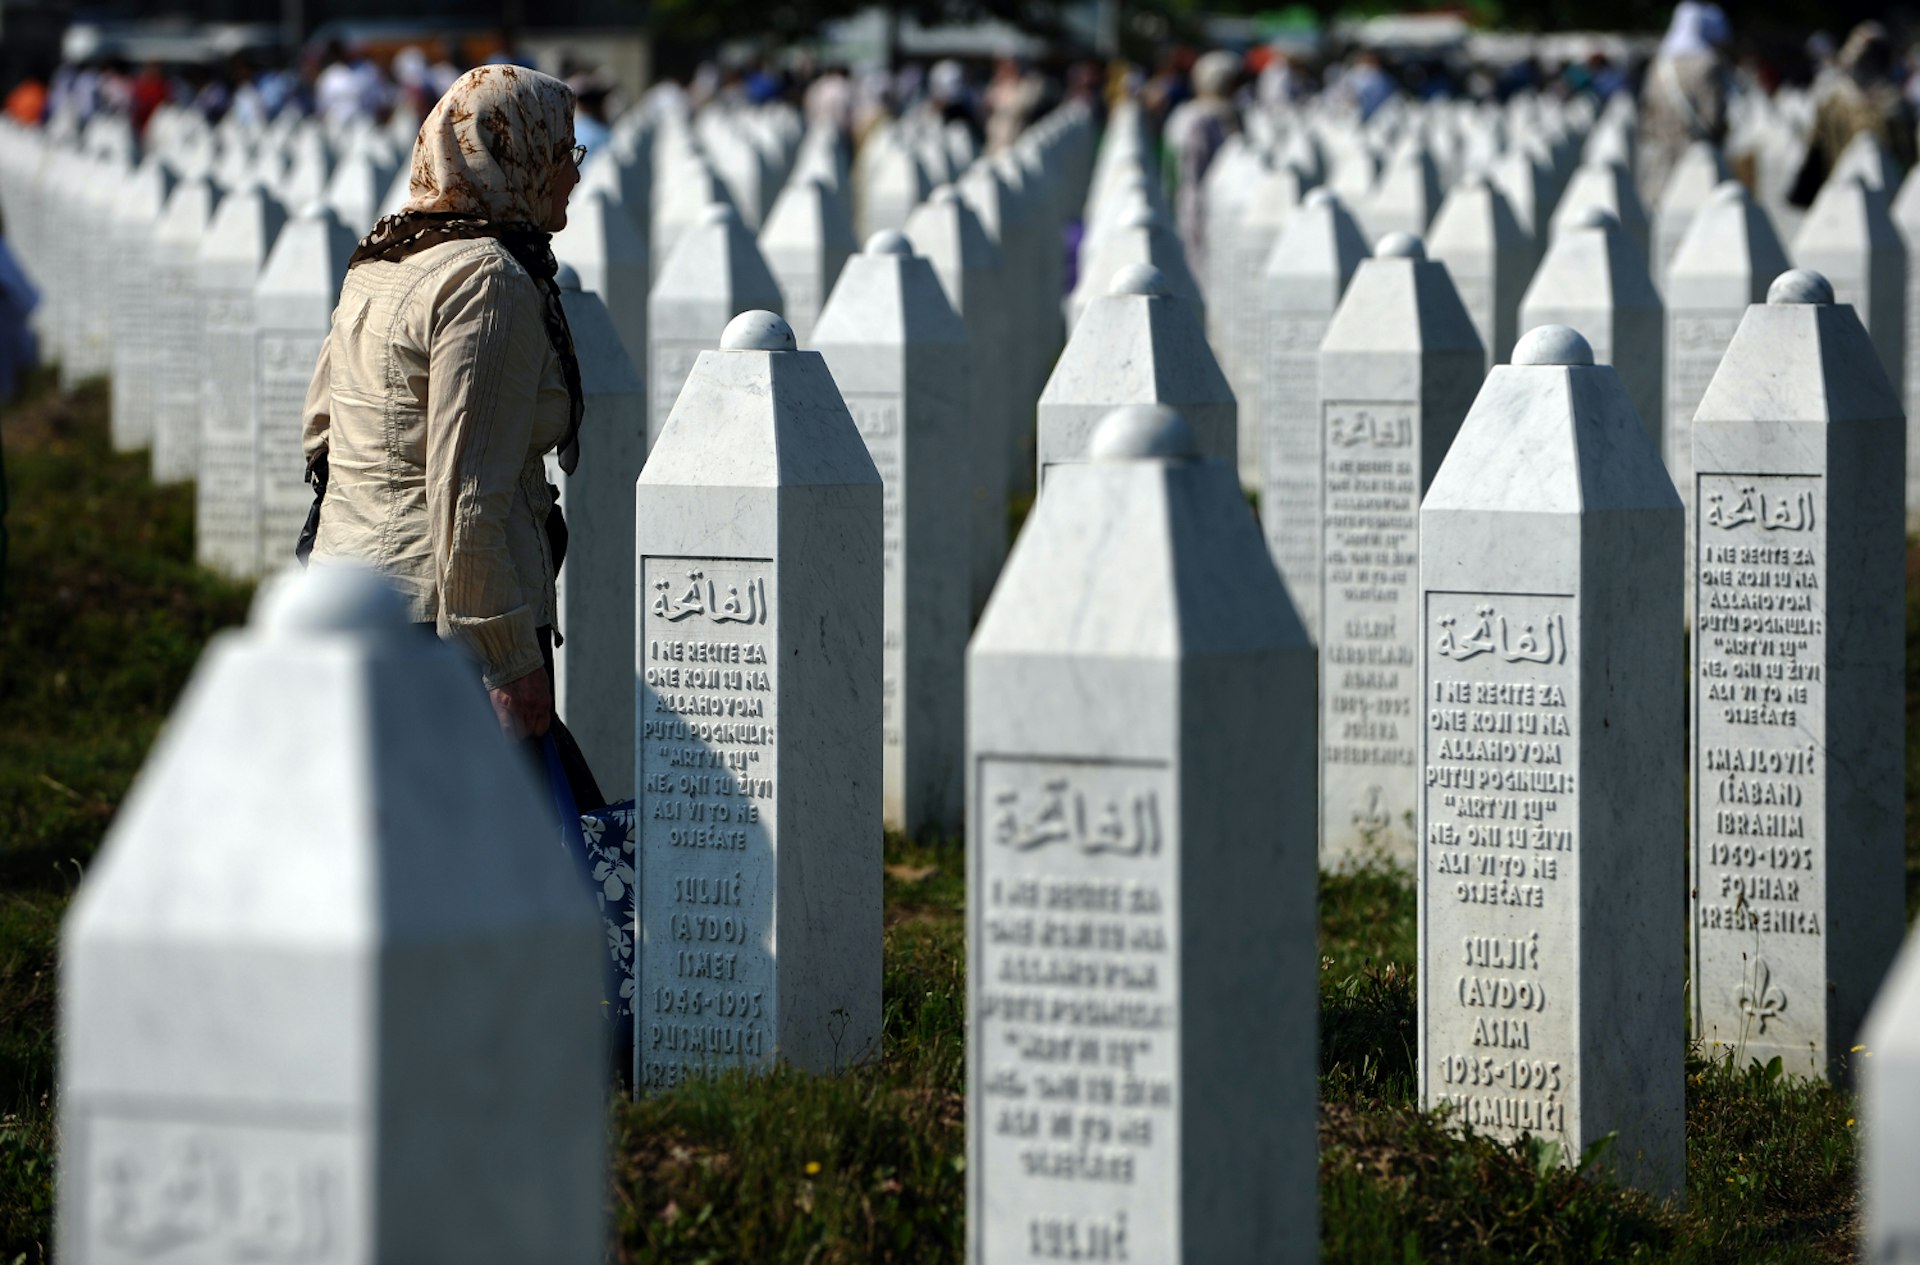 Potočari Memorial Cemetery near Srebrenica